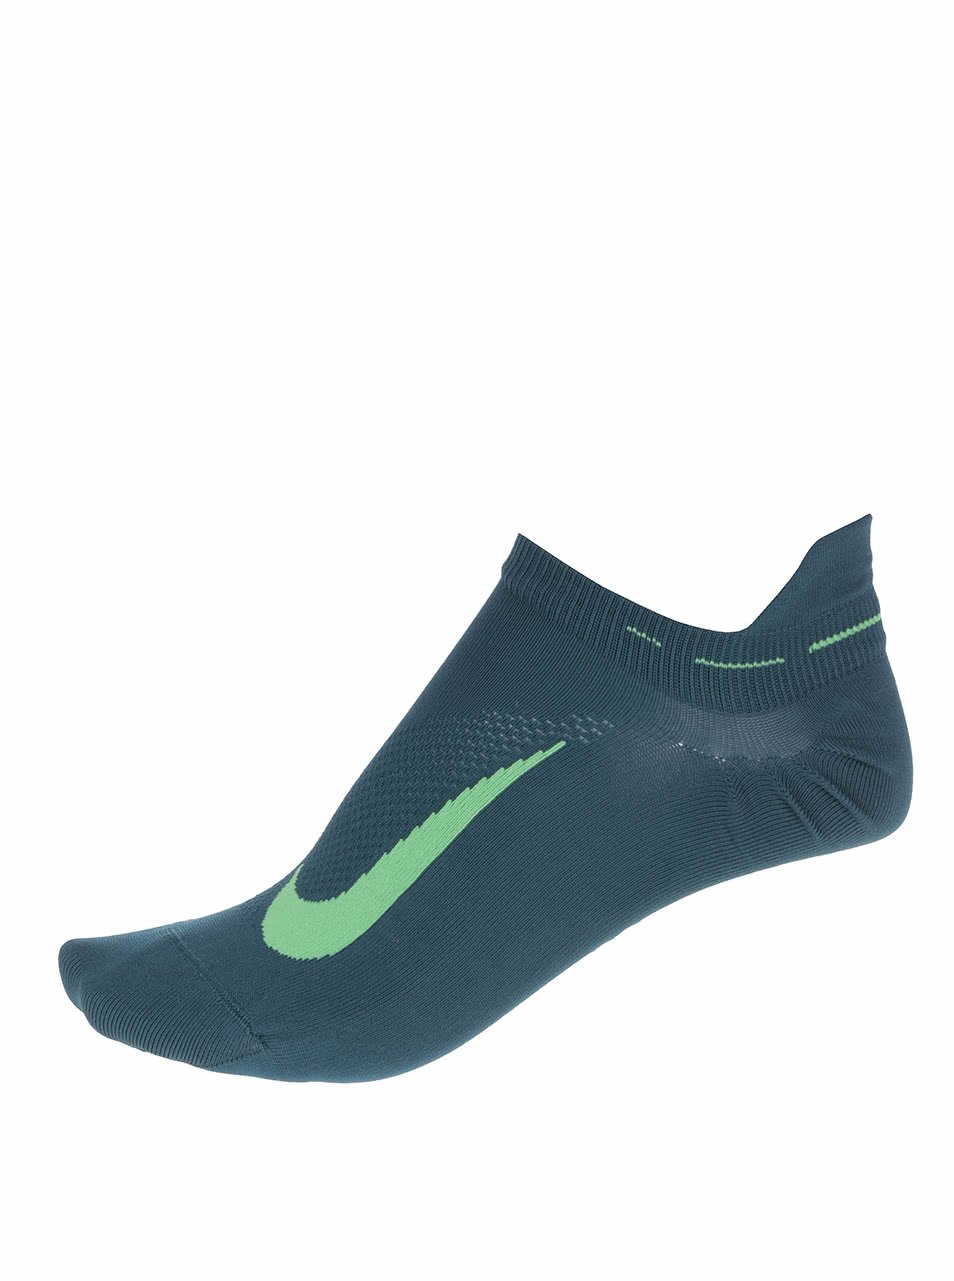 Tmavě zelené unisex kotníkové ponožky Nike Elite Running